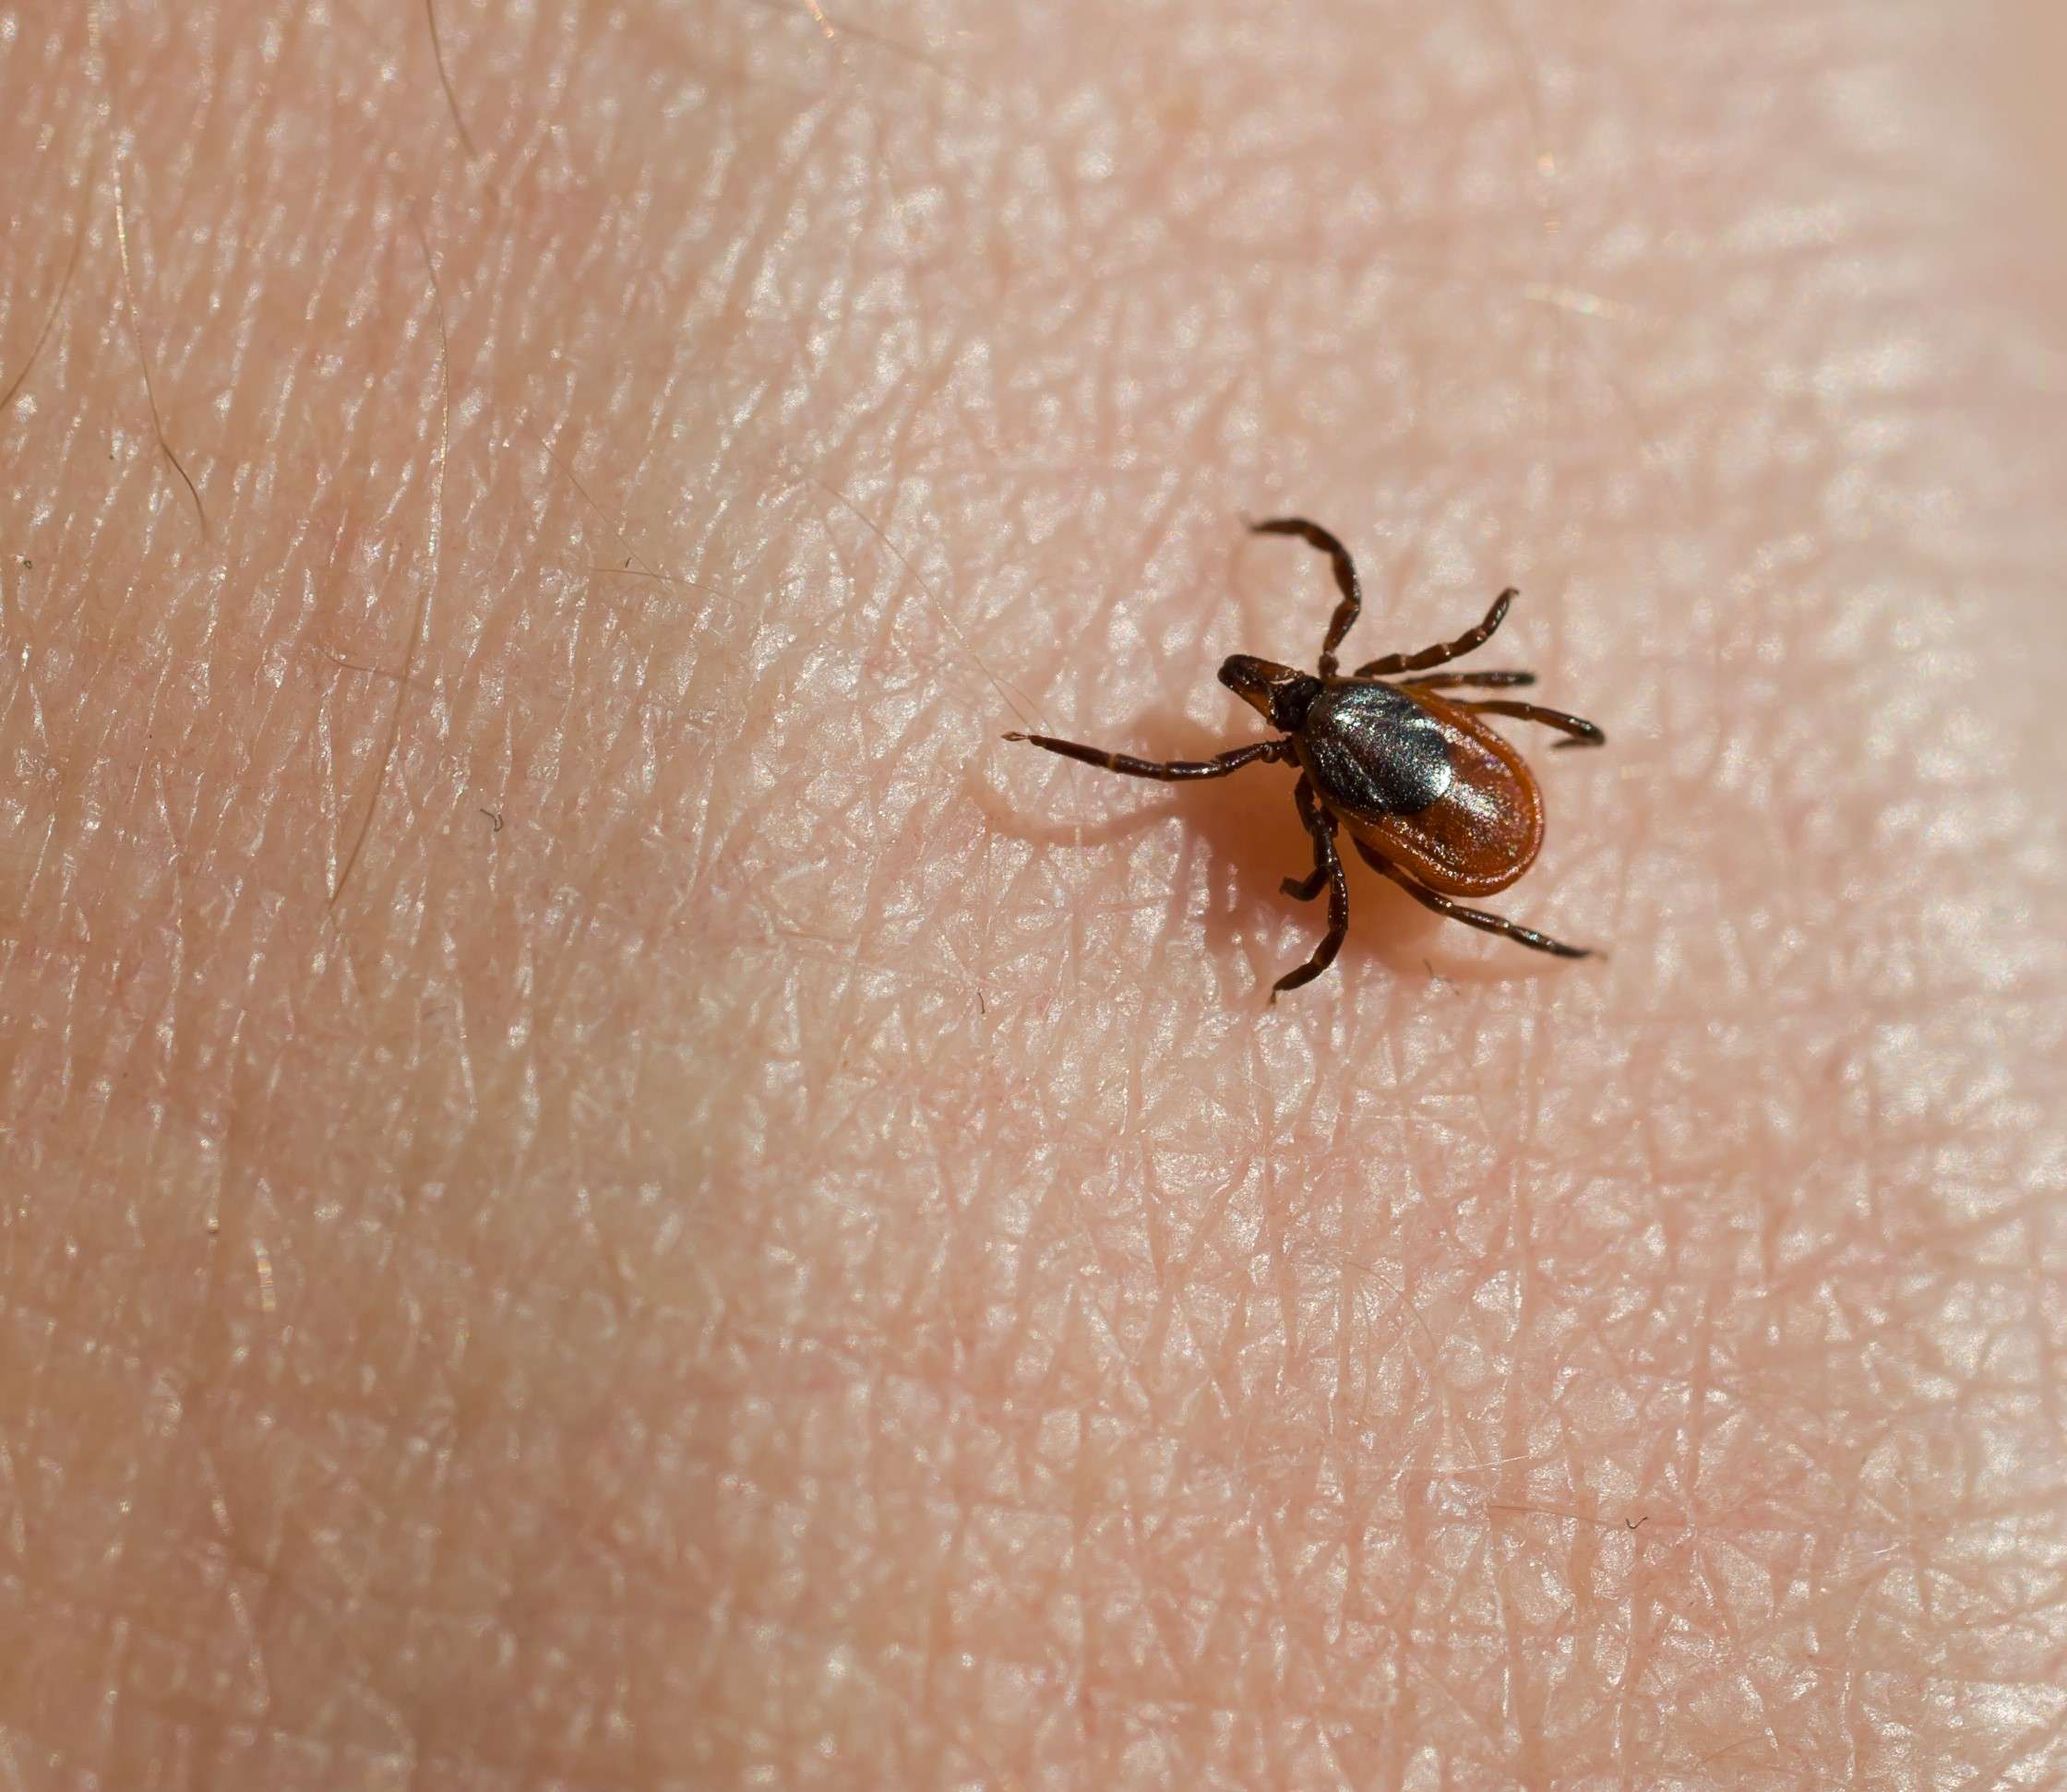 Ticks &  Lyme Disease â Western UP Health Department